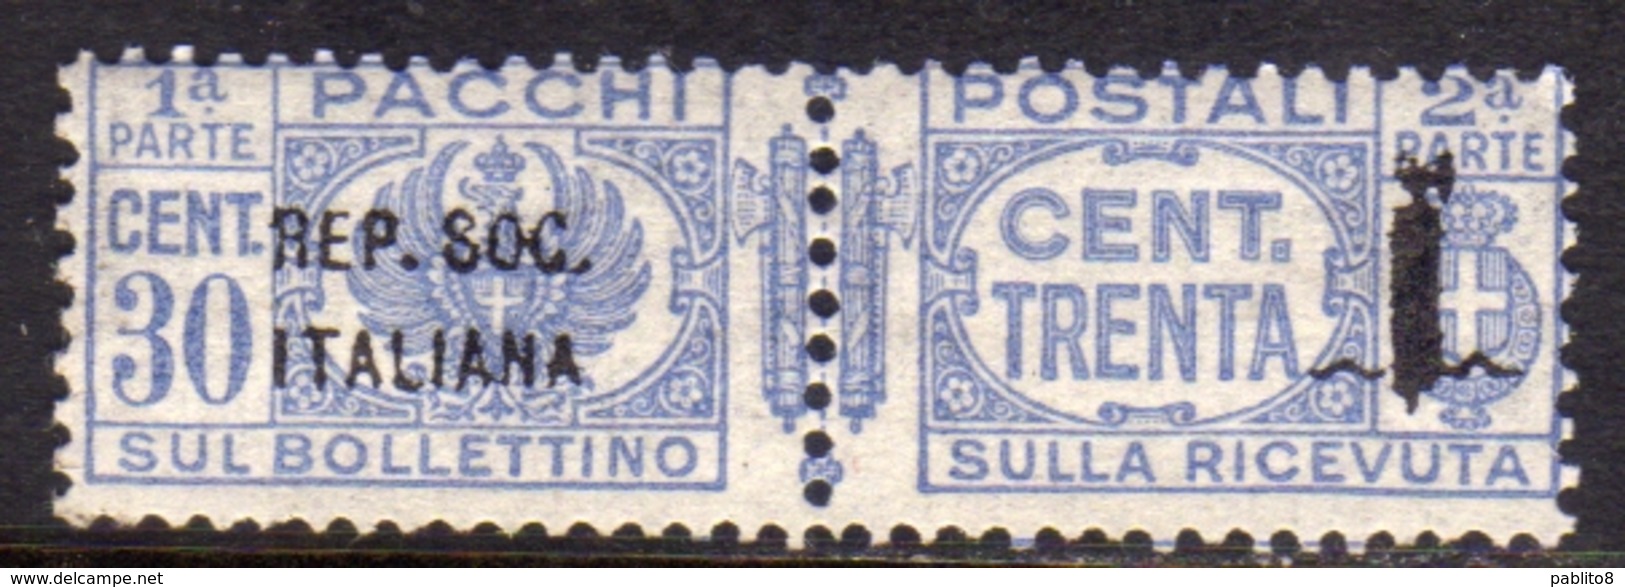 ITALIA REGNO ITALY KINGDOM 1944 RSI REPUBBLICA SOCIALE ITALIANA PACCHI POSTALI PARCEL POST FASCIO CENT. 30c MNH - Postpaketten